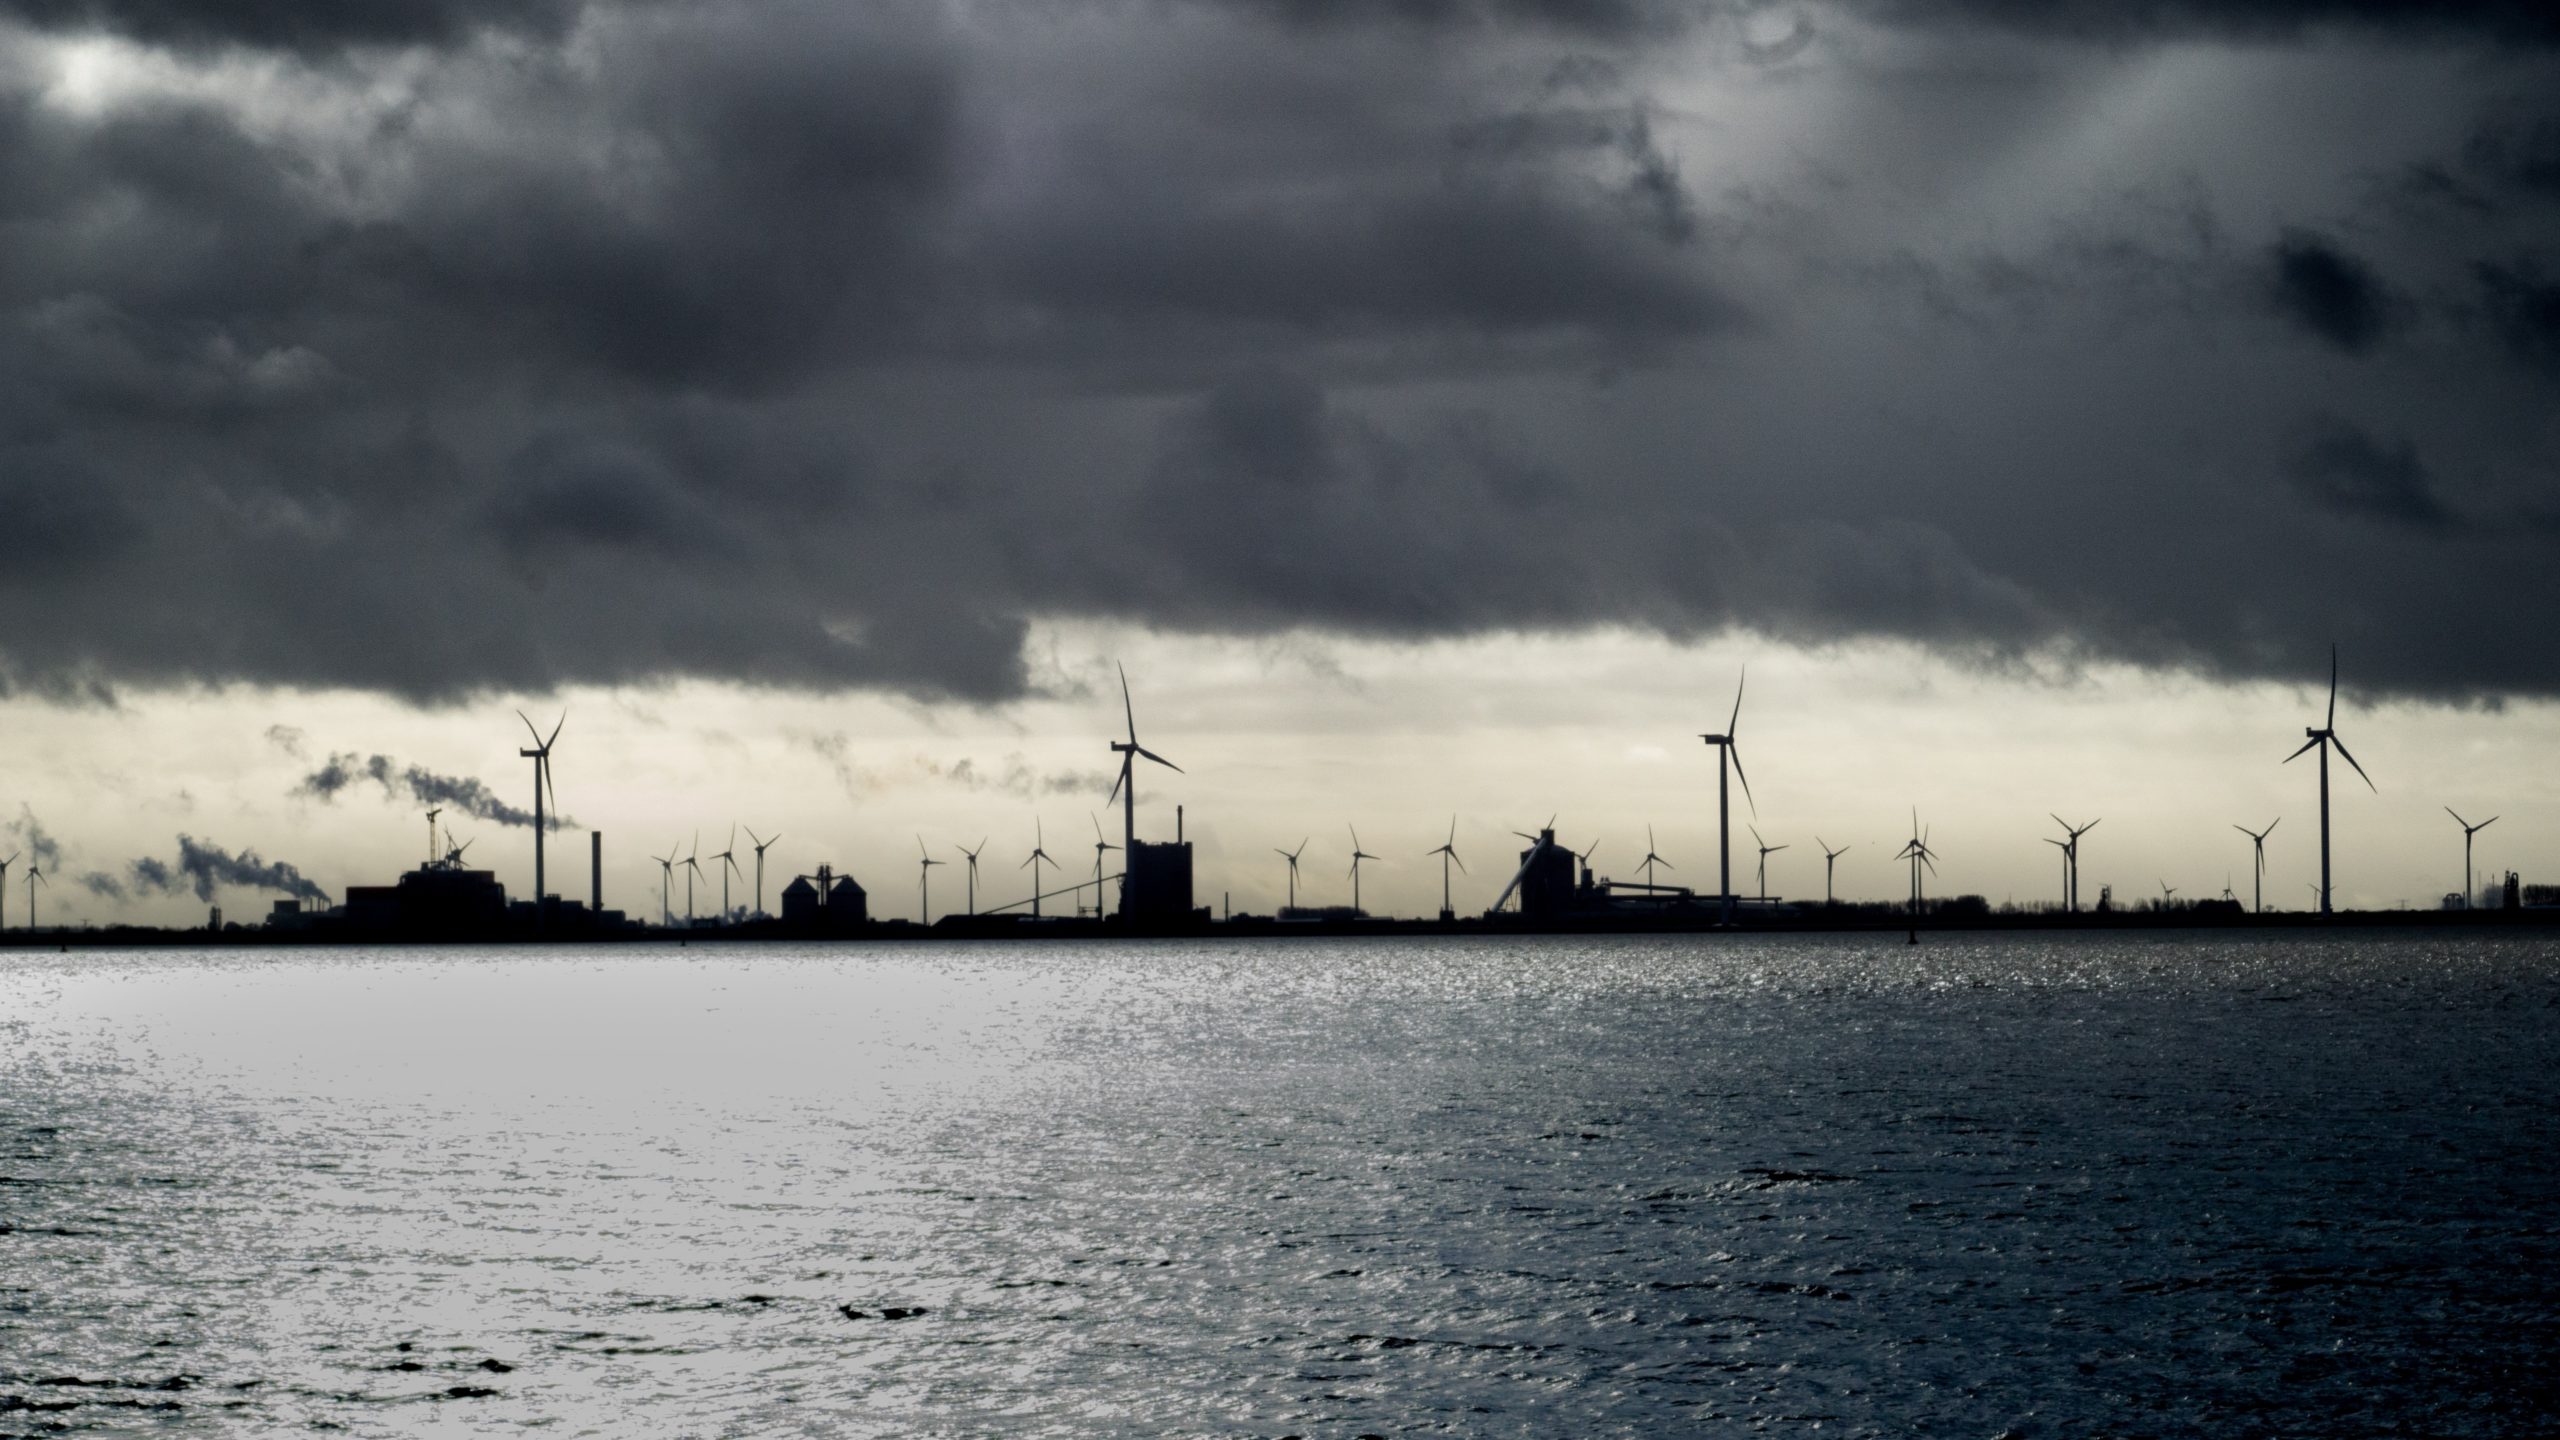 Industrie und mehrere Windräder stehen im Hintergrund im Meer. Darüber ist es stark bewölkt, die Stimmung ist düster